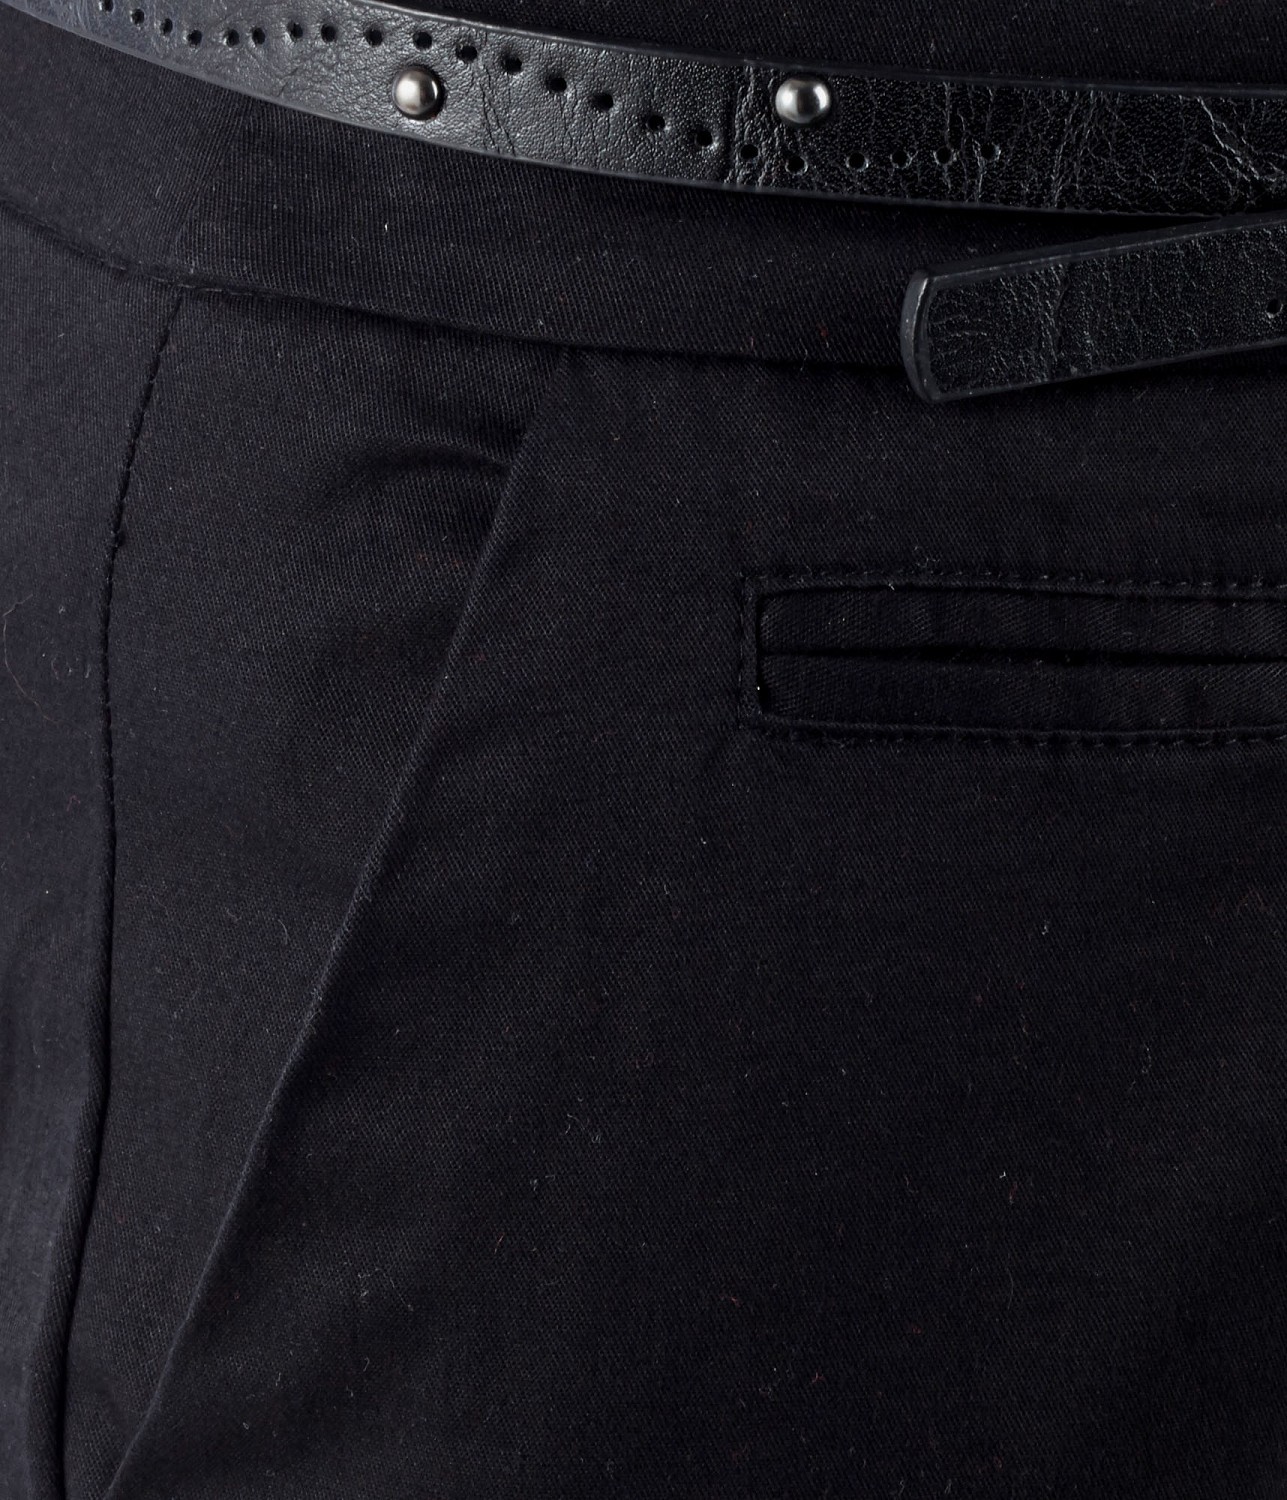 Camaieu fekete elegáns ruházat nadrág 2013.8.9 fotója